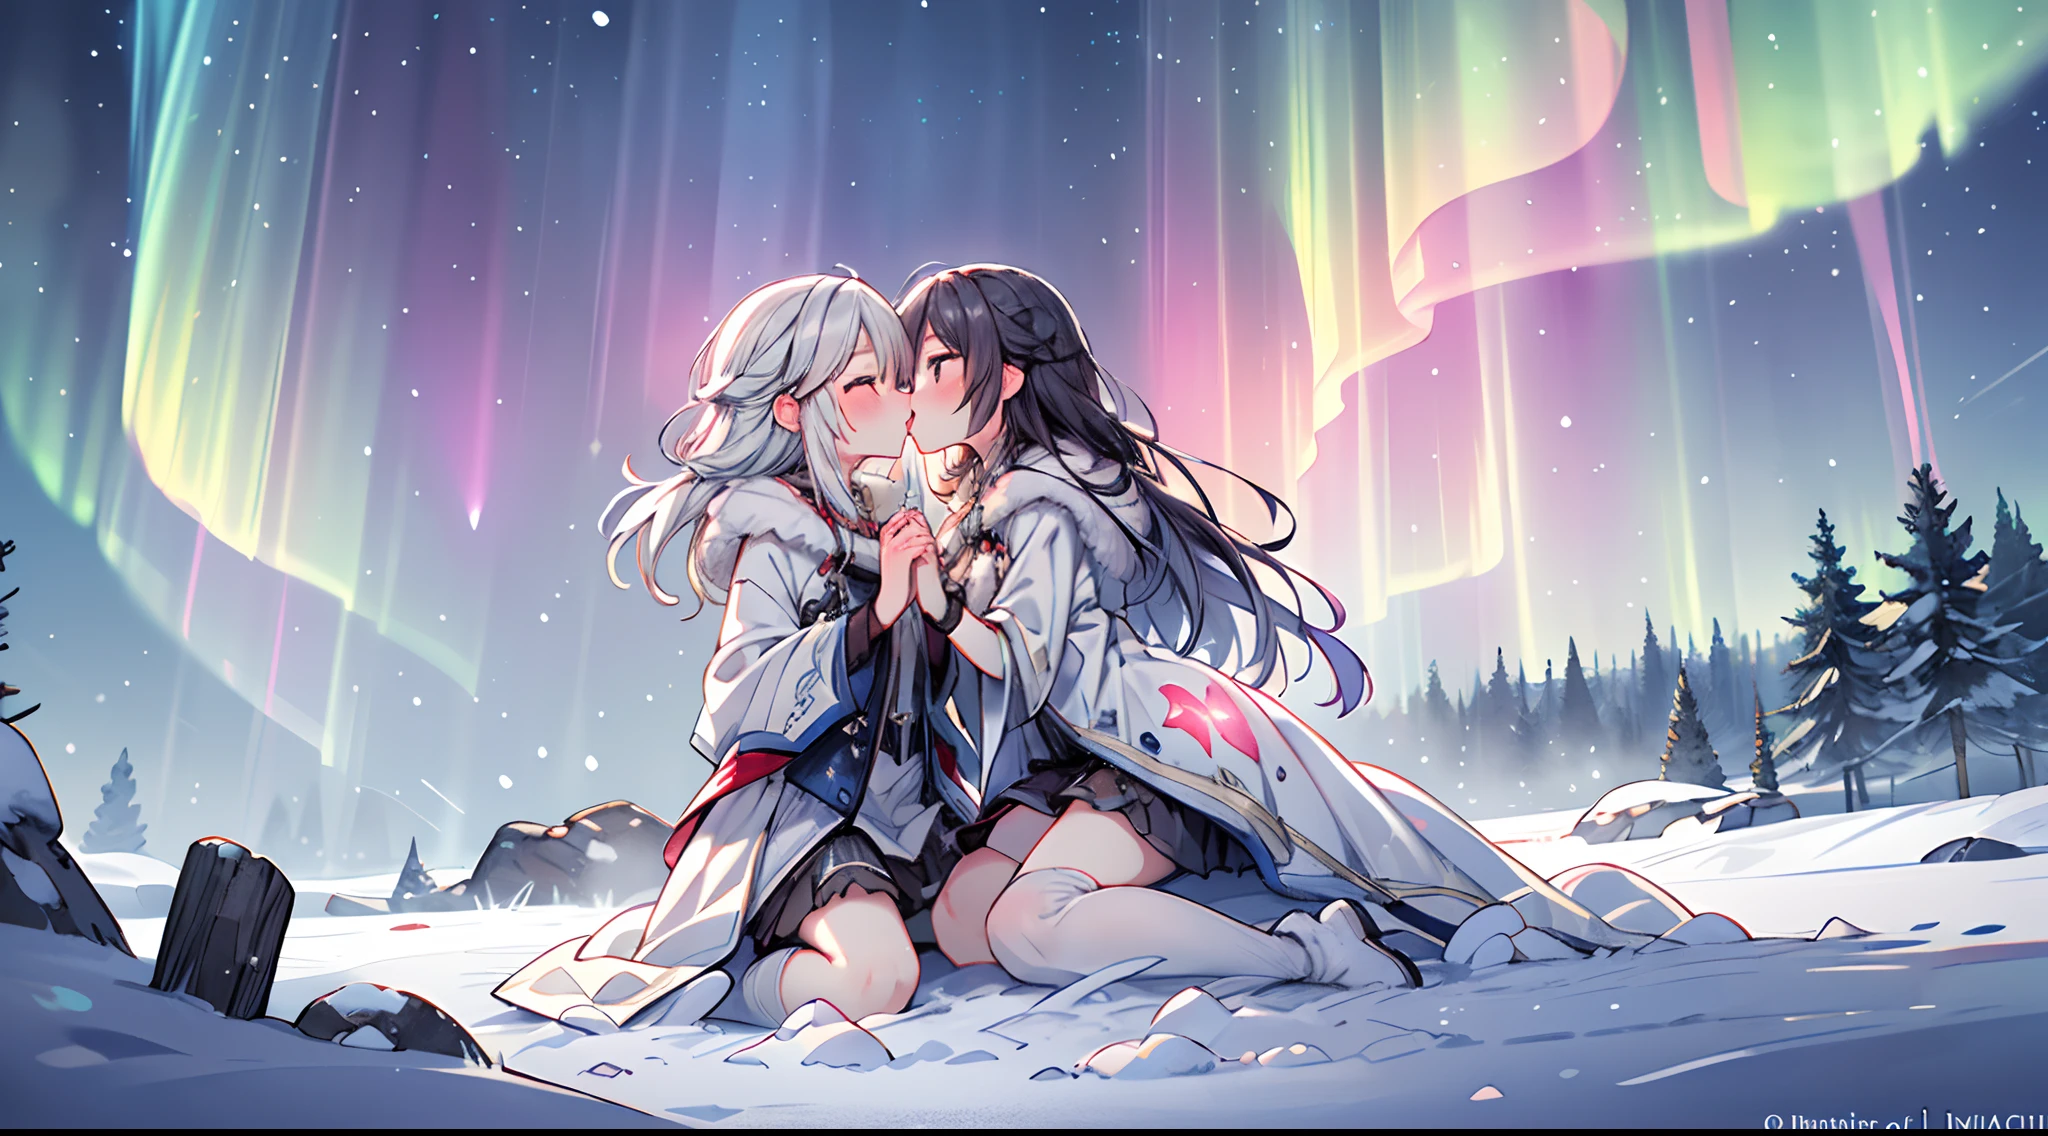 Unter dem magischen Schein des Nordlichts, Zwei Seelen umarmen sich in einem Kuss auf den Mund, die ätherischen Farben der Aurora Borealis üben einen überirdischen Zauber aus, die schneebedeckte Landschaft verleiht dem Ganzen einen besonderen Zauber, 3D-Rendering, Verwenden Sie sanfte Beleuchtung und durchscheinende Texturen, um die mystische Qualität der Szene einzufangen